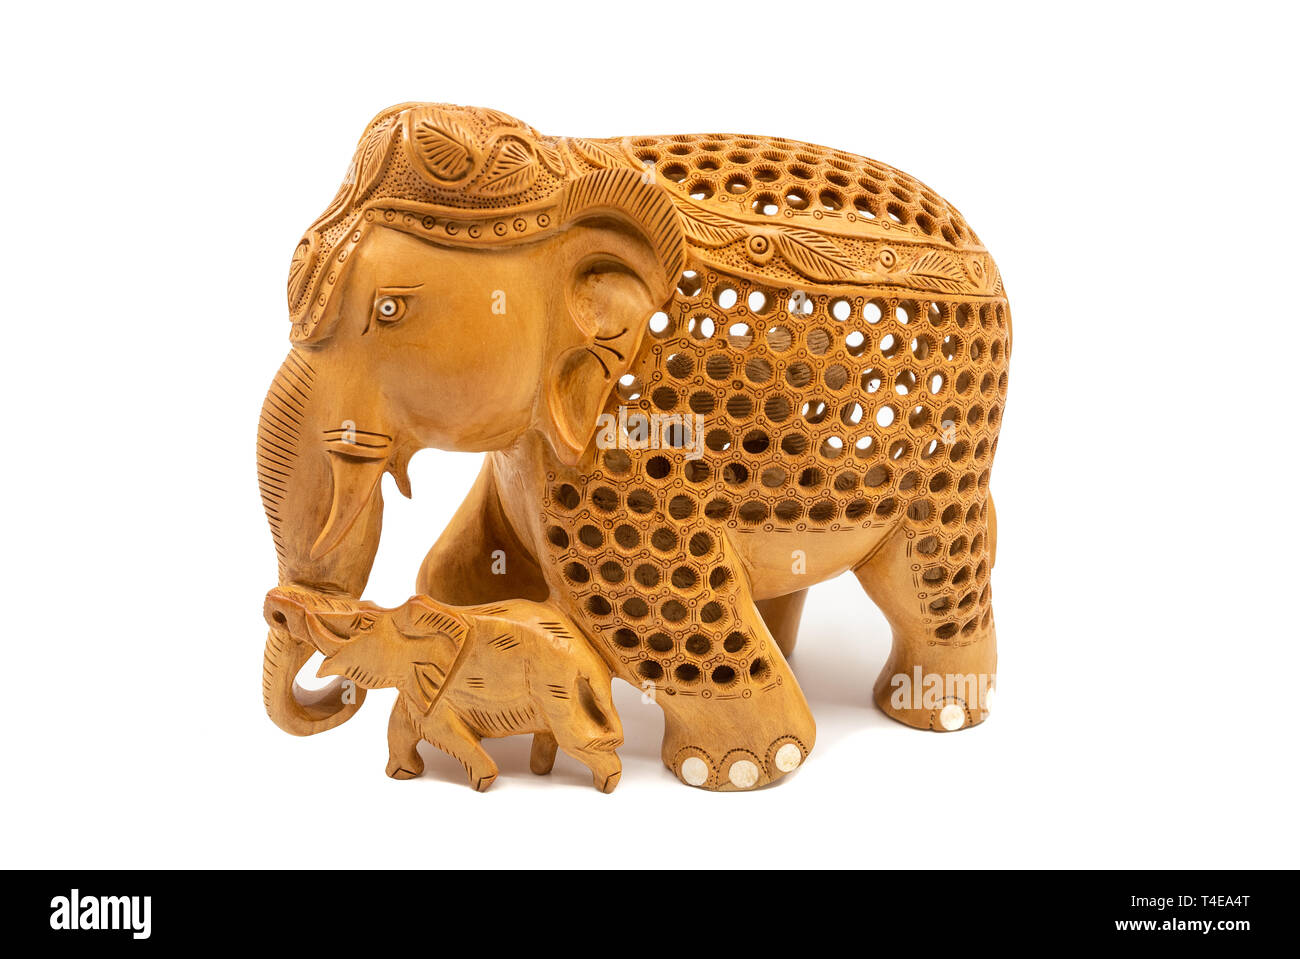 Tradizionale elefante scolpito la madre e il bambino statua souvenir, isolato su uno sfondo bianco Foto Stock